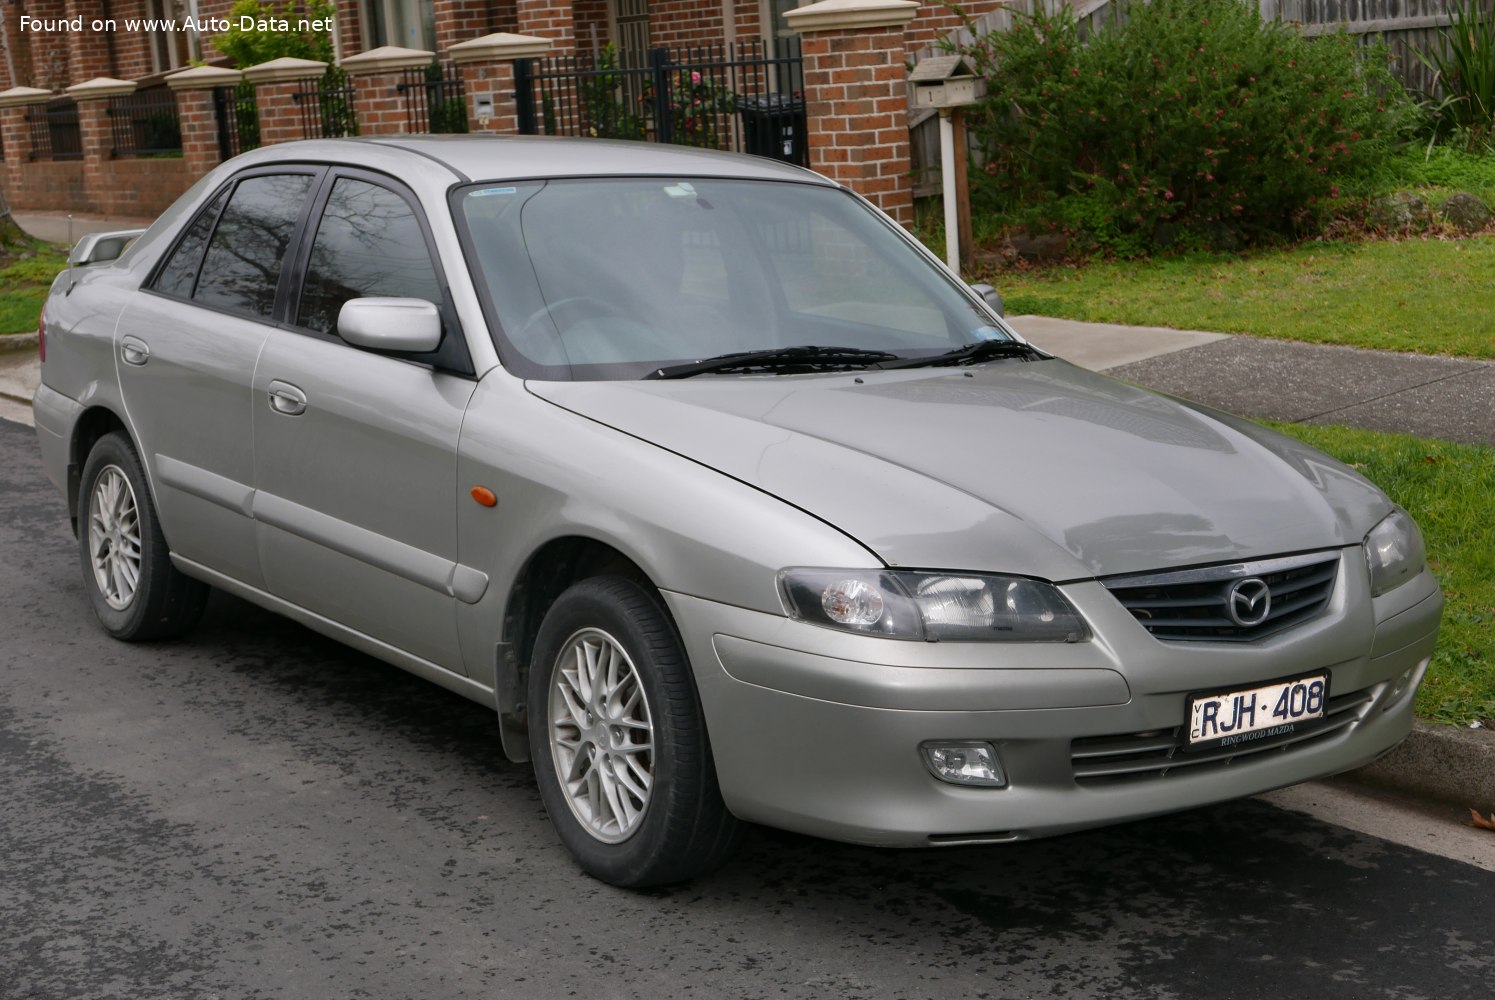 1997 Mazda 626 V (GF) | Technical Specs, Fuel consumption, Dimensions